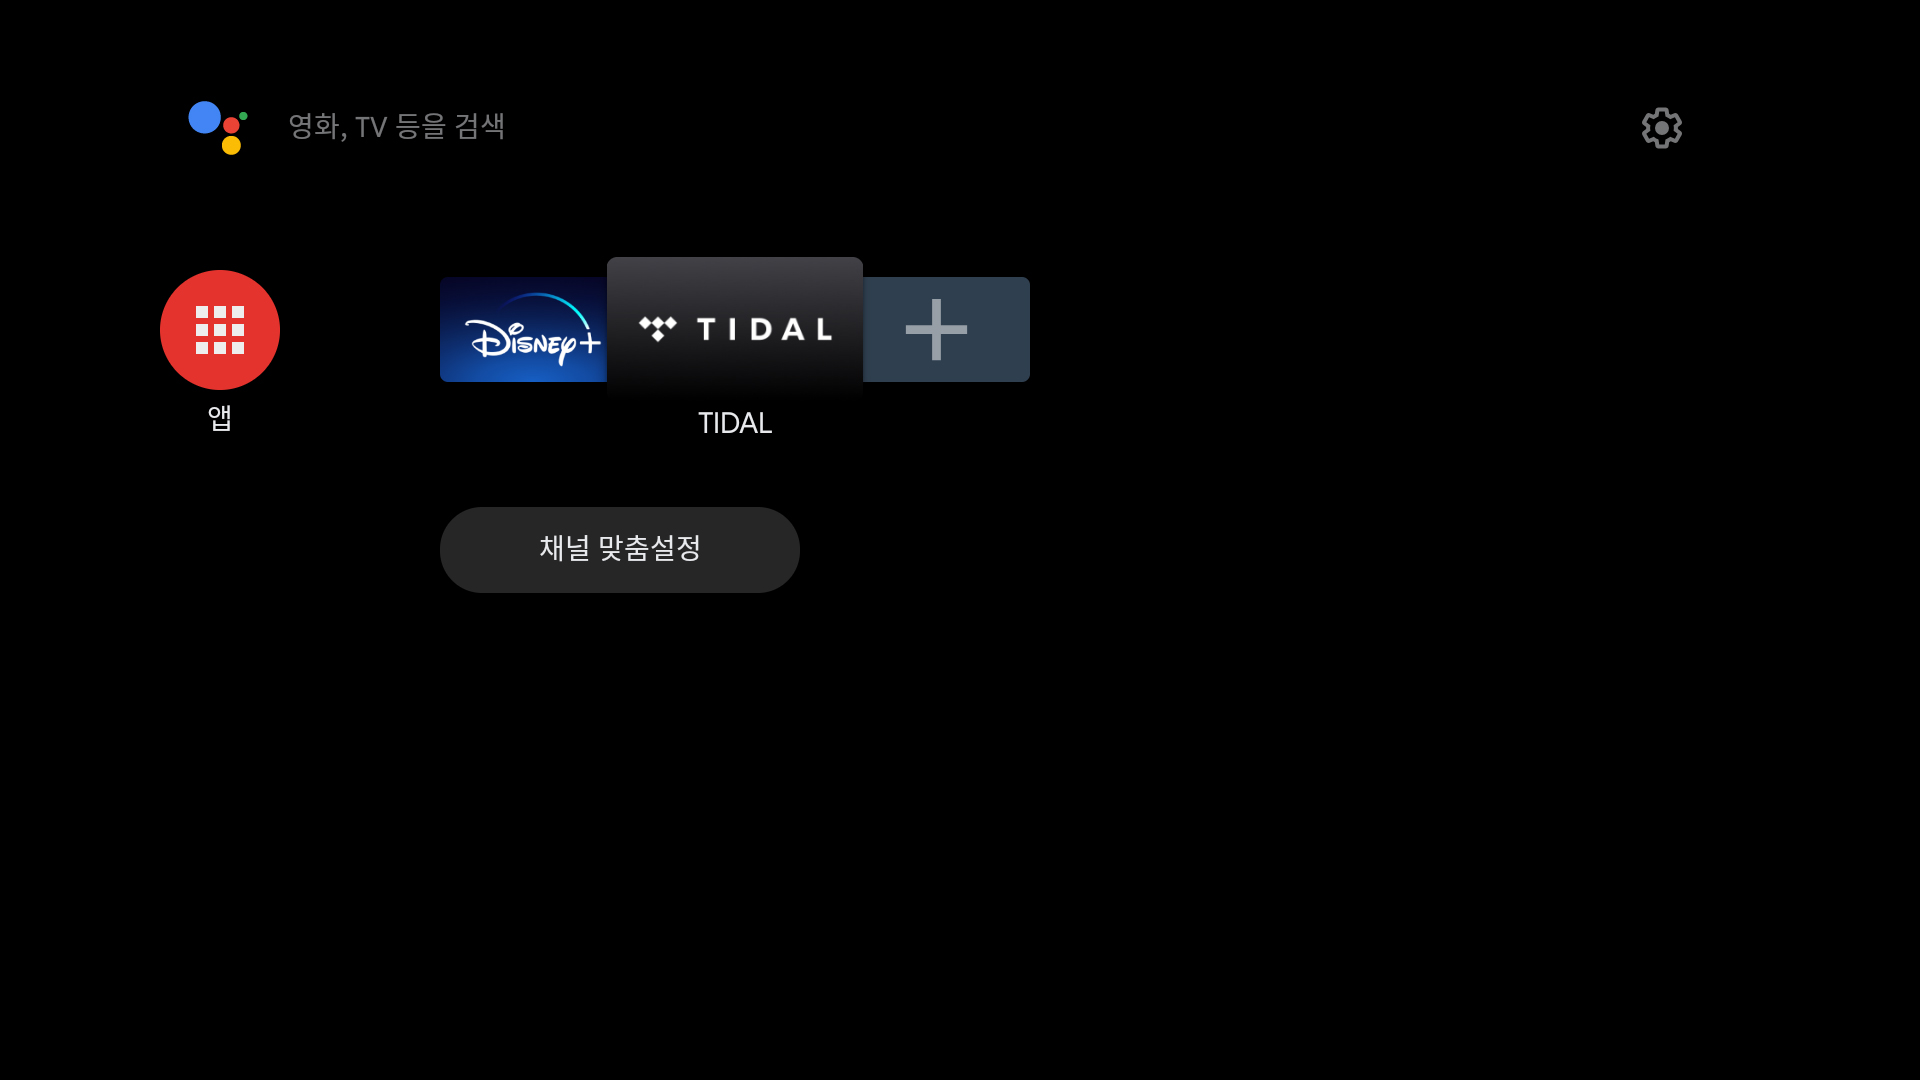 TiVo Stream 4K TIDAL